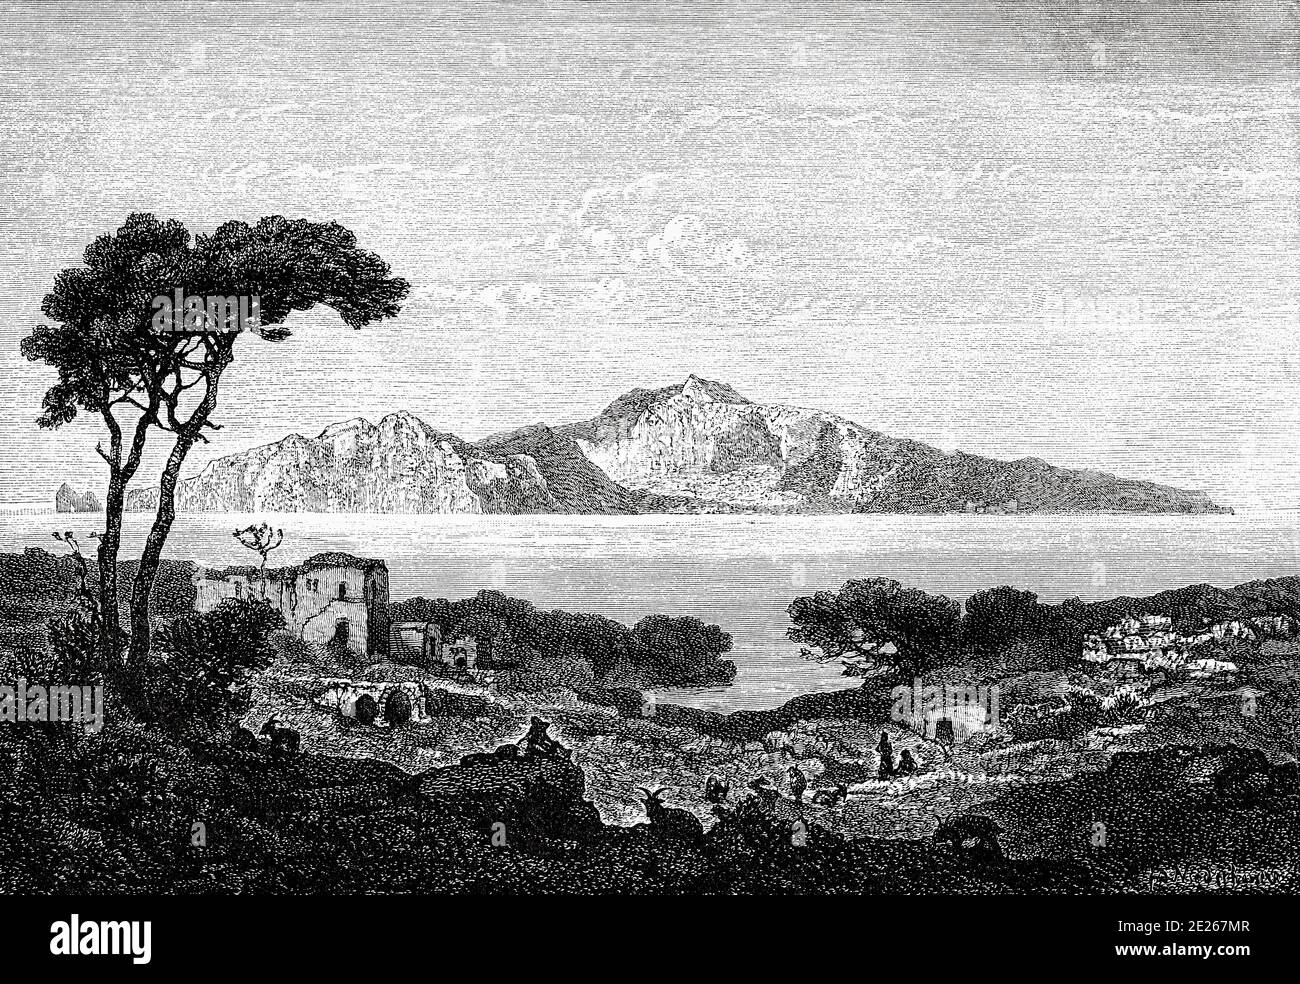 Panorama-Gesamtansicht der Insel Capri von Massa-Lubrense. Italien Europa. Altes XIX. Jahrhundert gravierte Illustration aus dem Buch Neue universelle Geographie von Eliseo Reclus 1889 Stockfoto